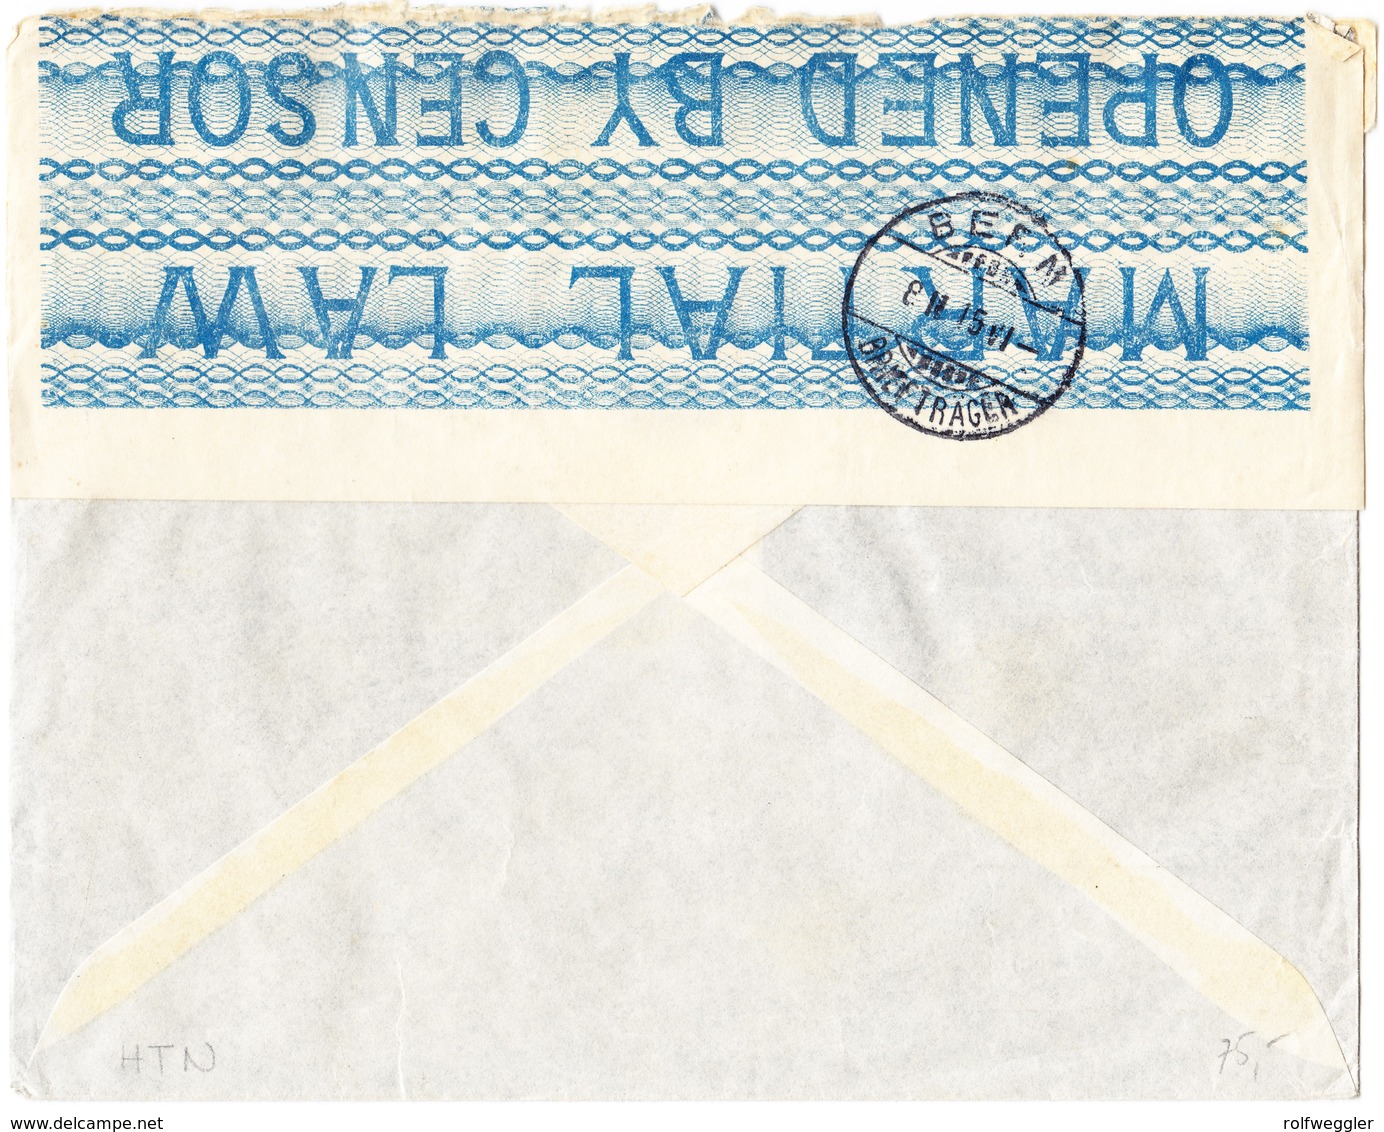 1915 Zensurierter R-Brief Aus Port Said An Ernst Zumstein Bern; Leichte Gebrauchsspuren - Covers & Documents